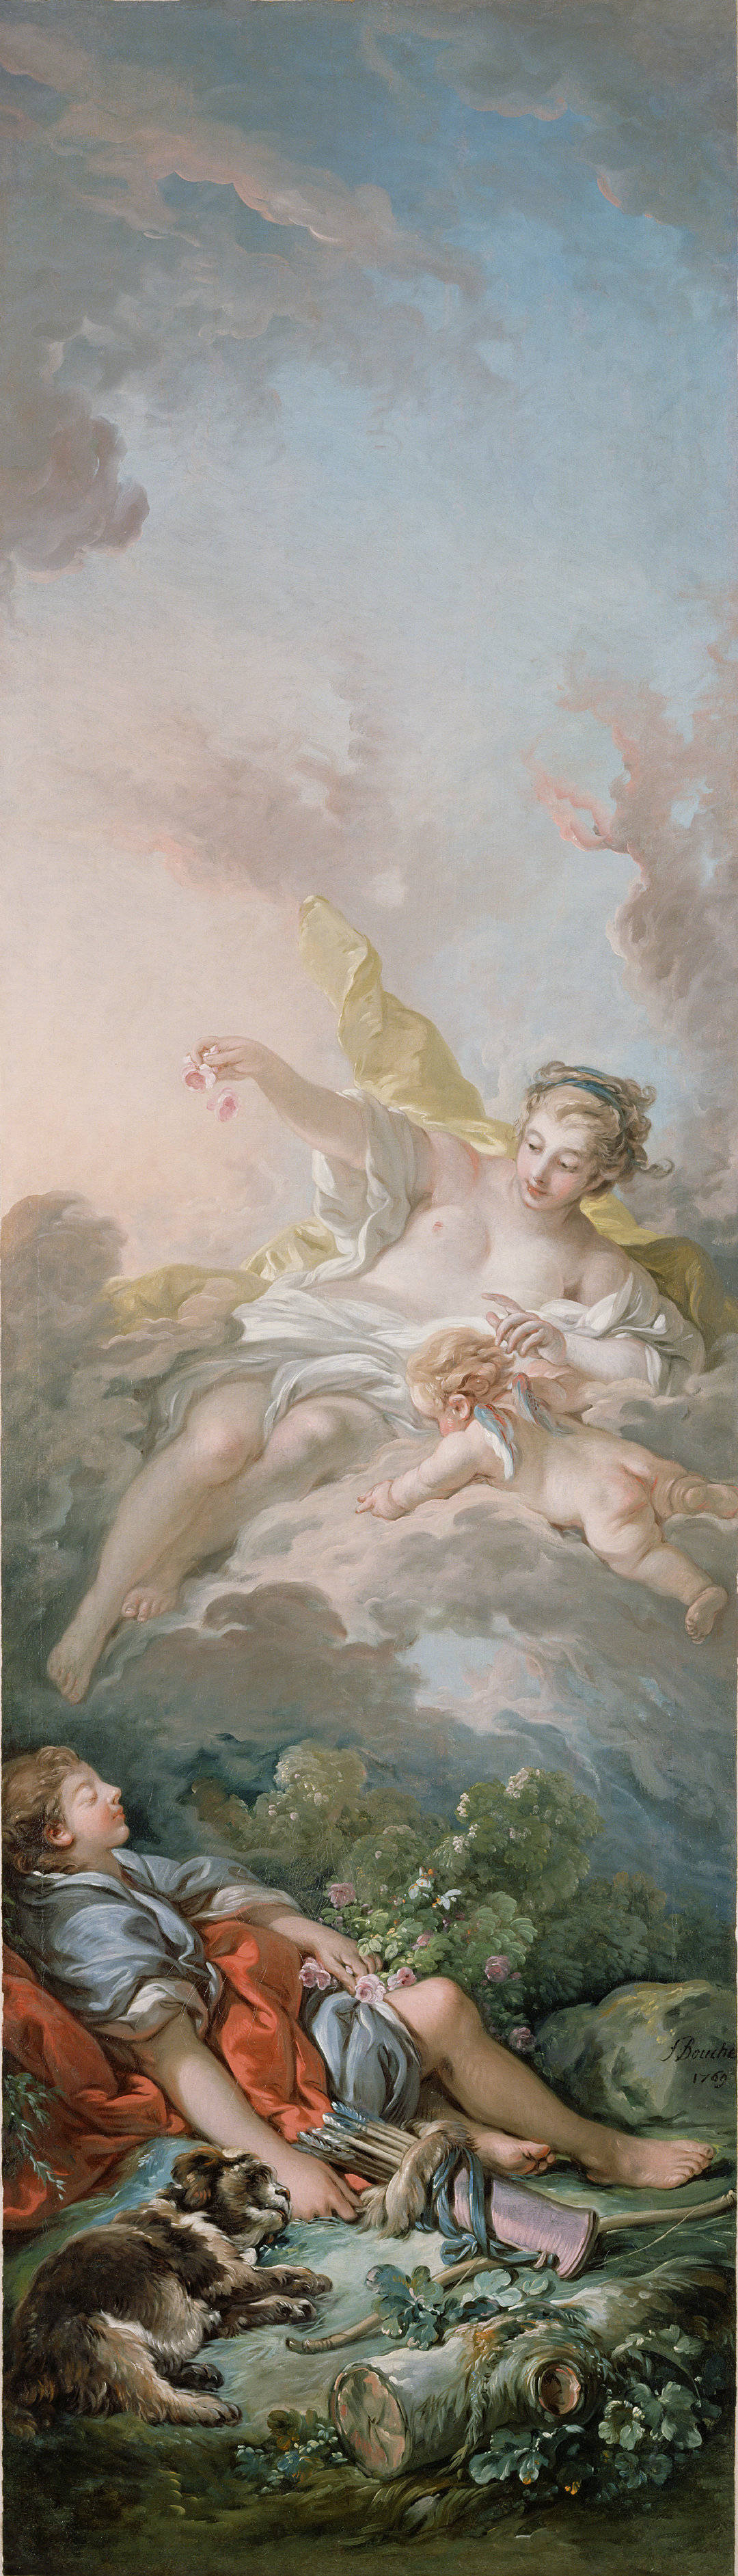 欧若拉与刻法罗斯"[法]弗朗索瓦·布歇在罗马神话中,黎明女神欧若拉爱